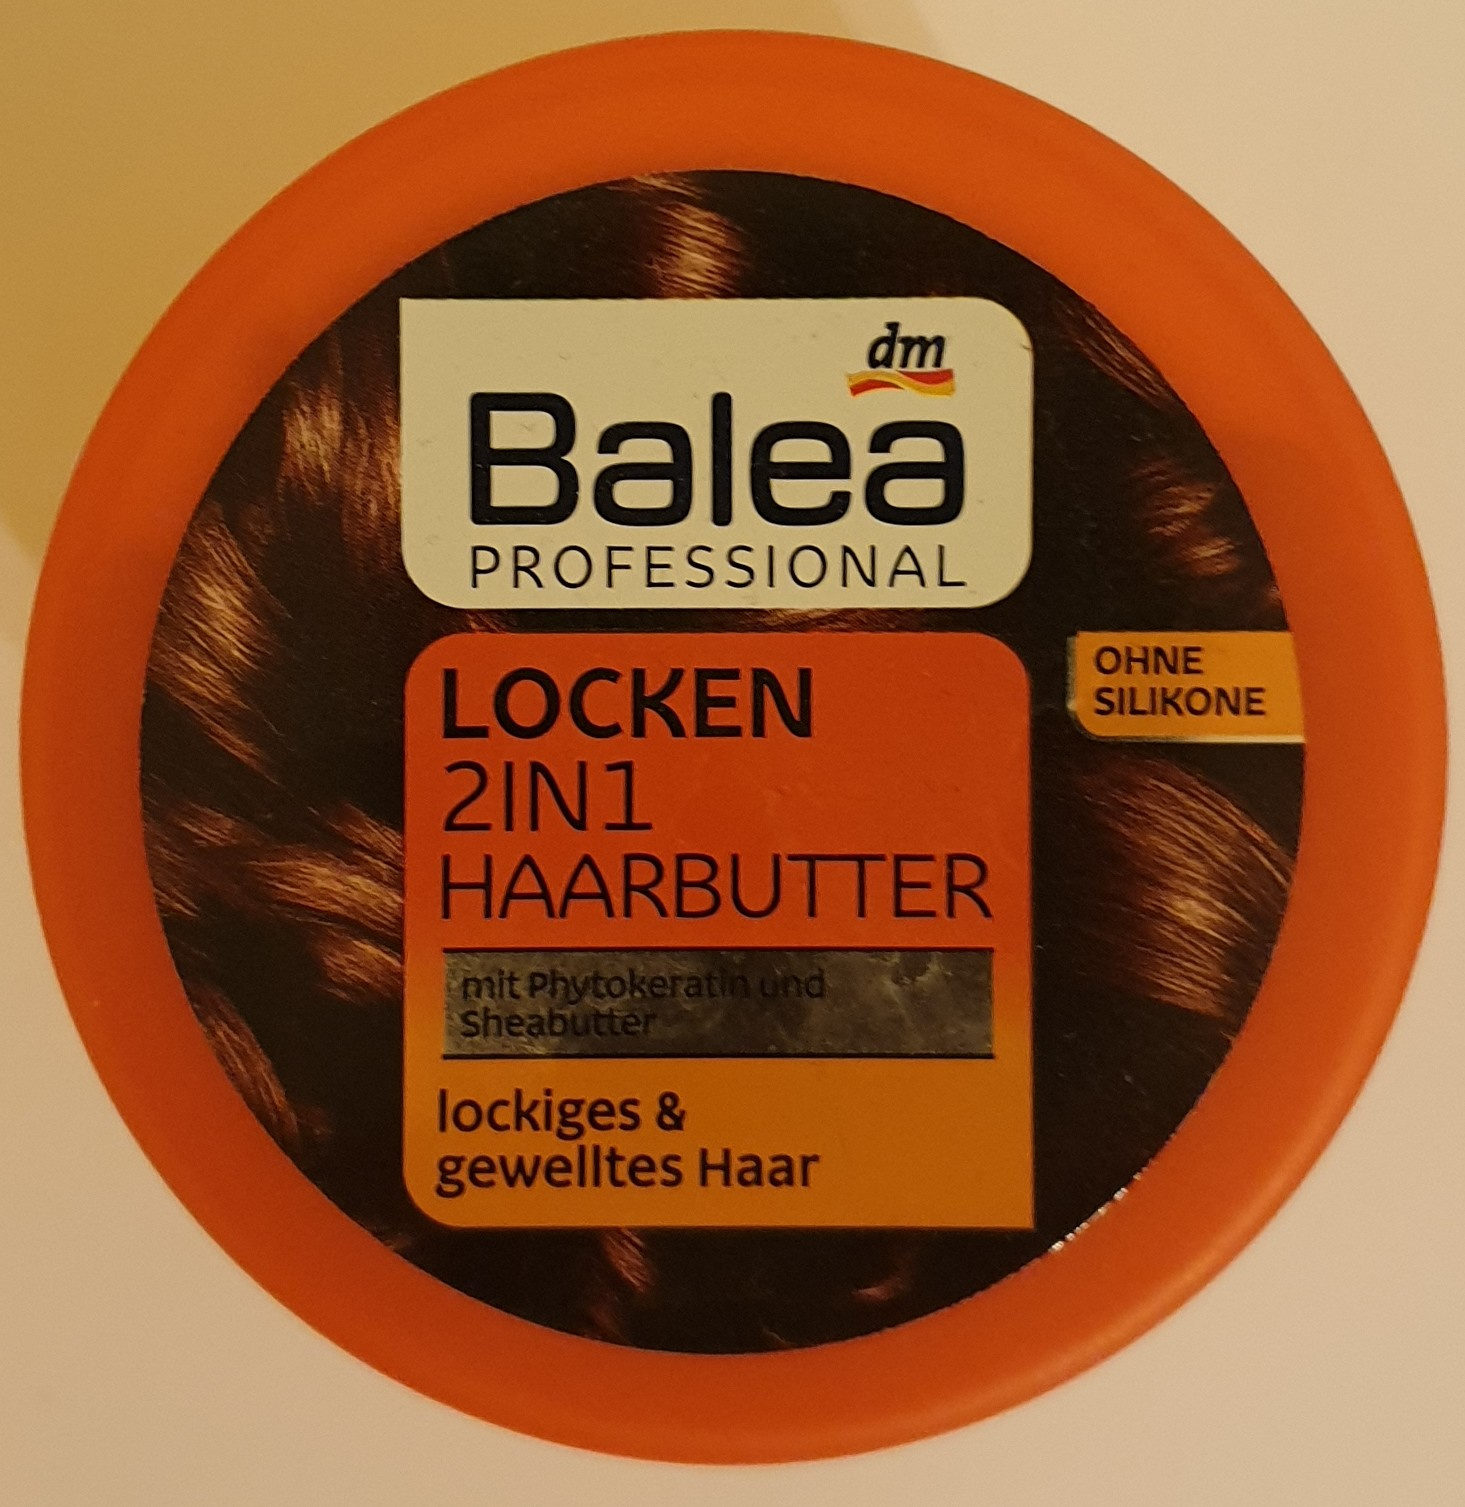 Locken 2in1 Haarbutter - Produkt - de